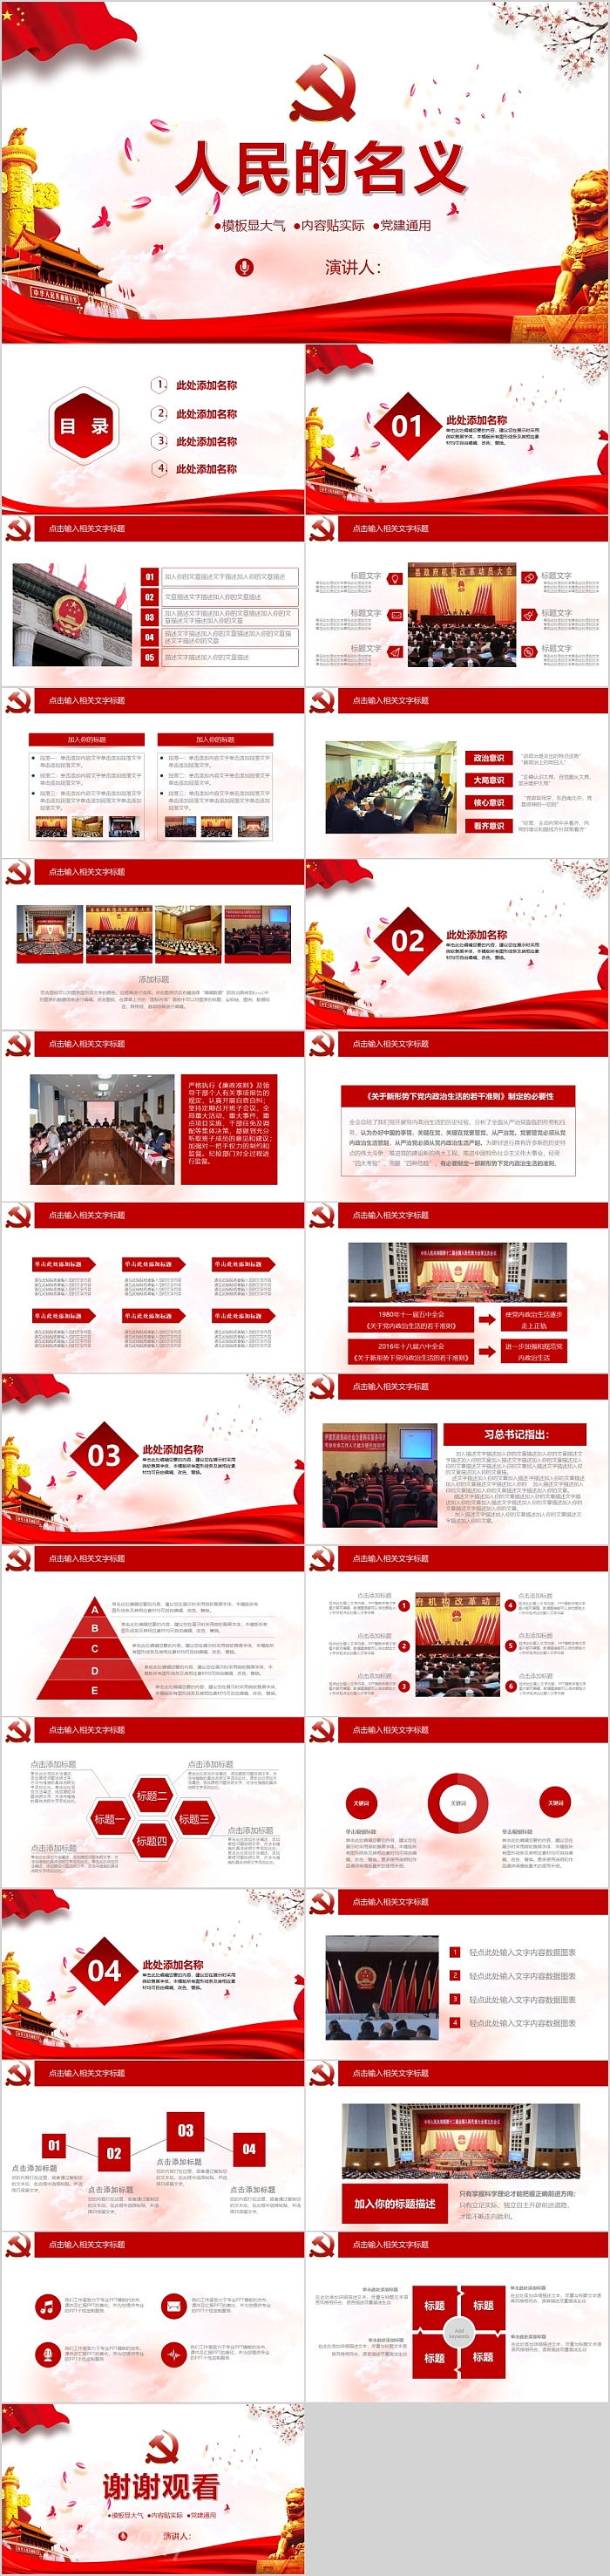 经典中国红执法为民政府机关人民的名义PPT模板